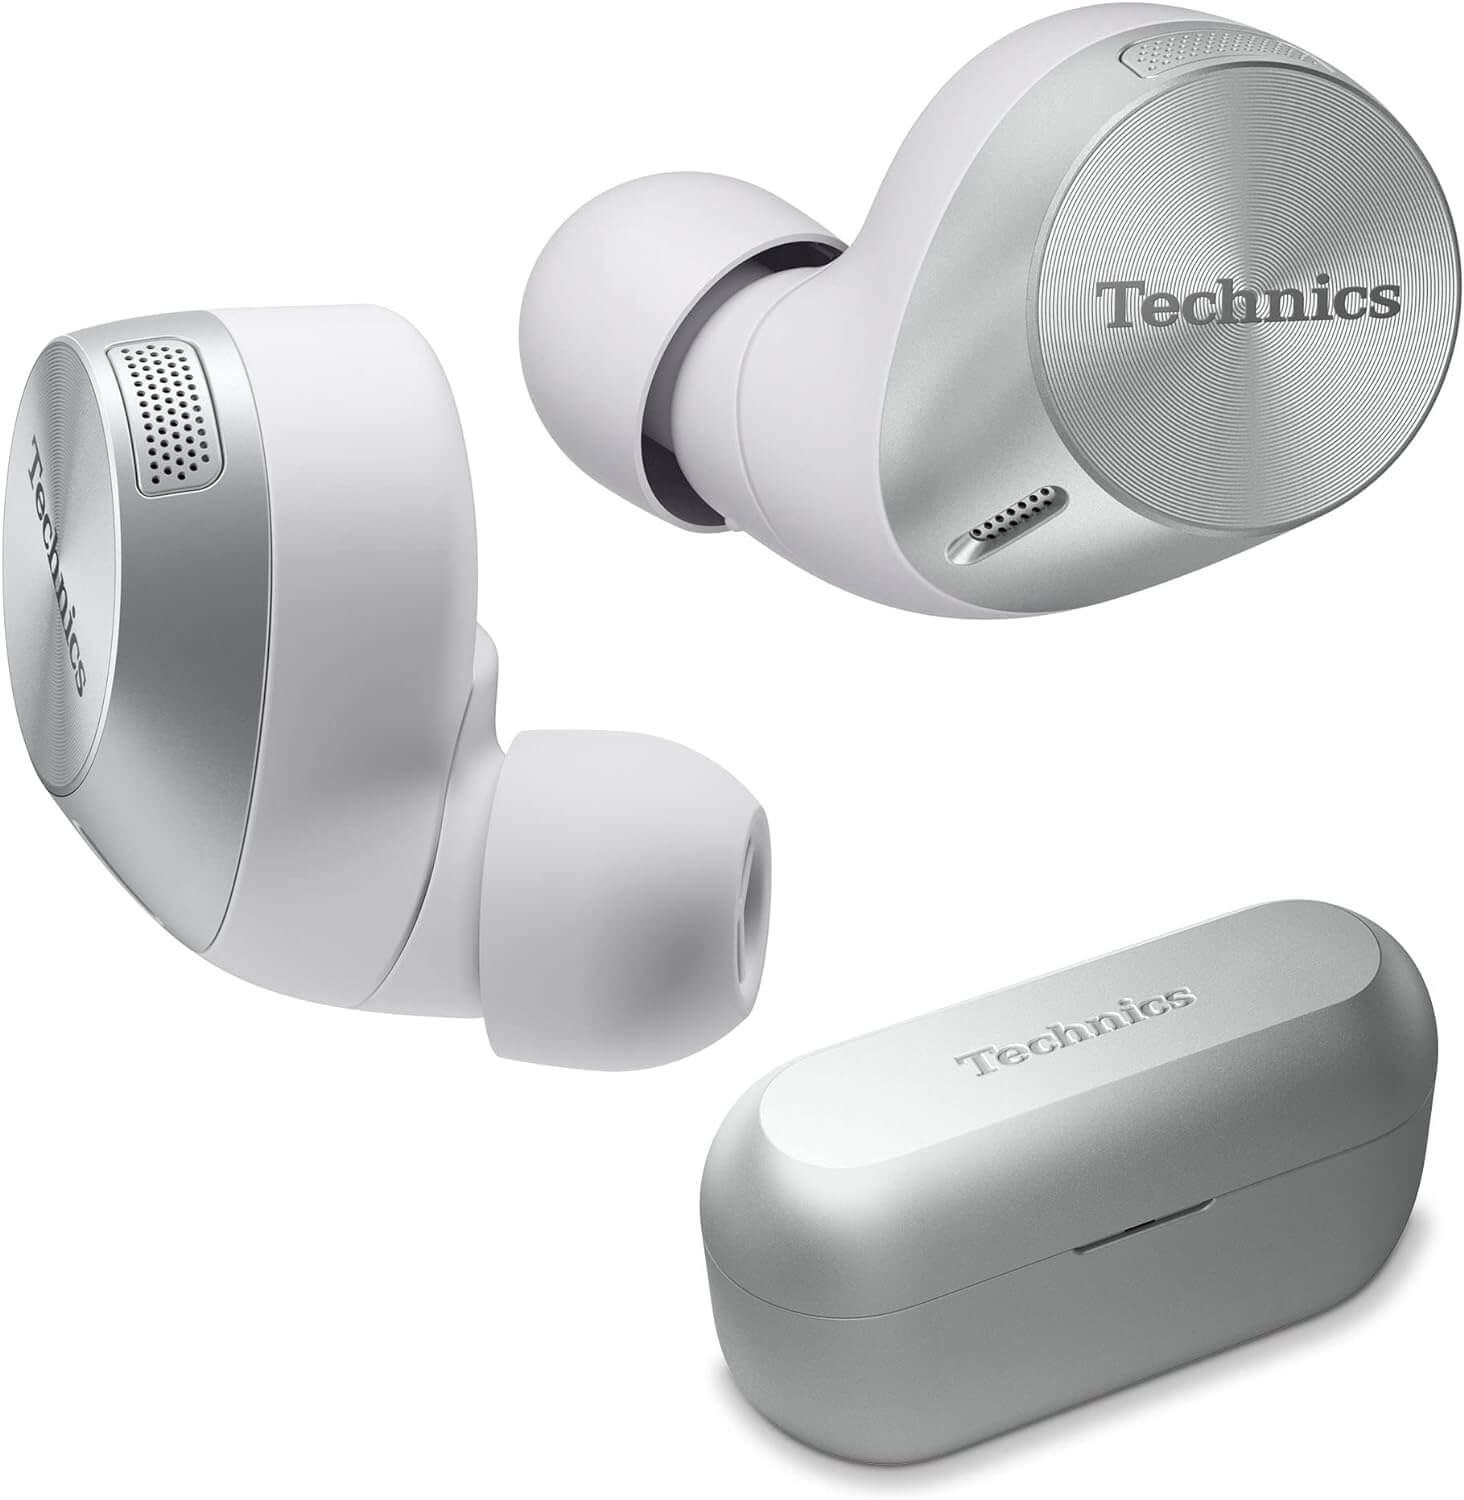 🎧 Technics Premium Hi-Fi True Wireless Bluetooth Earbuds 🎧